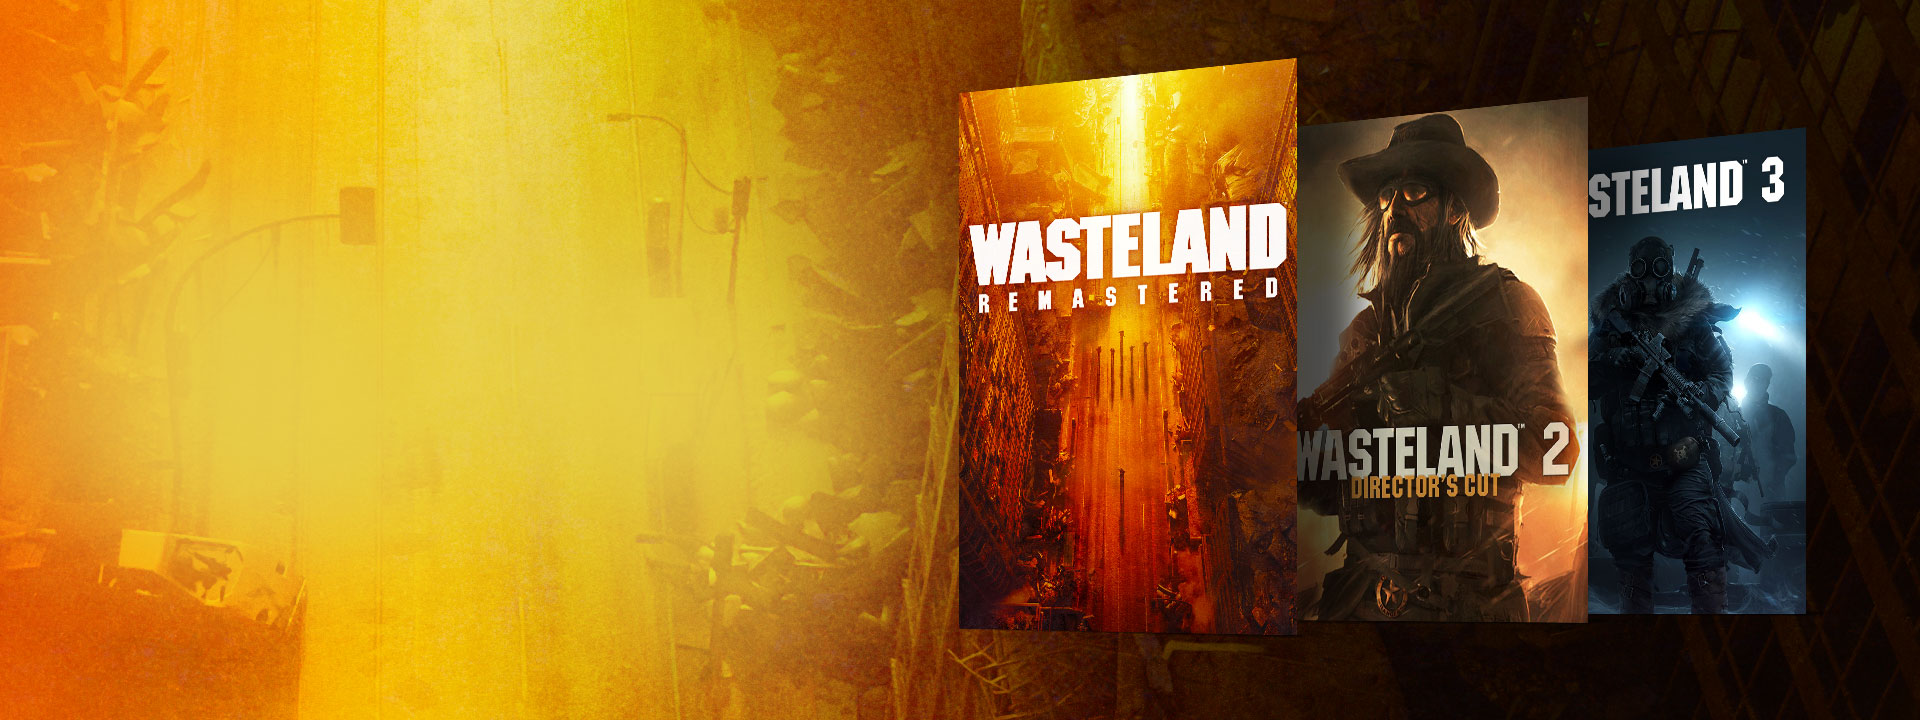 Grafiki przedstawiające opakowania gier Wasteland Remastered, Wasteland 2 Director's Cut, i Wasteland 3. W tle opuszczona ulica w żółto-pomarańczowych odcieniach